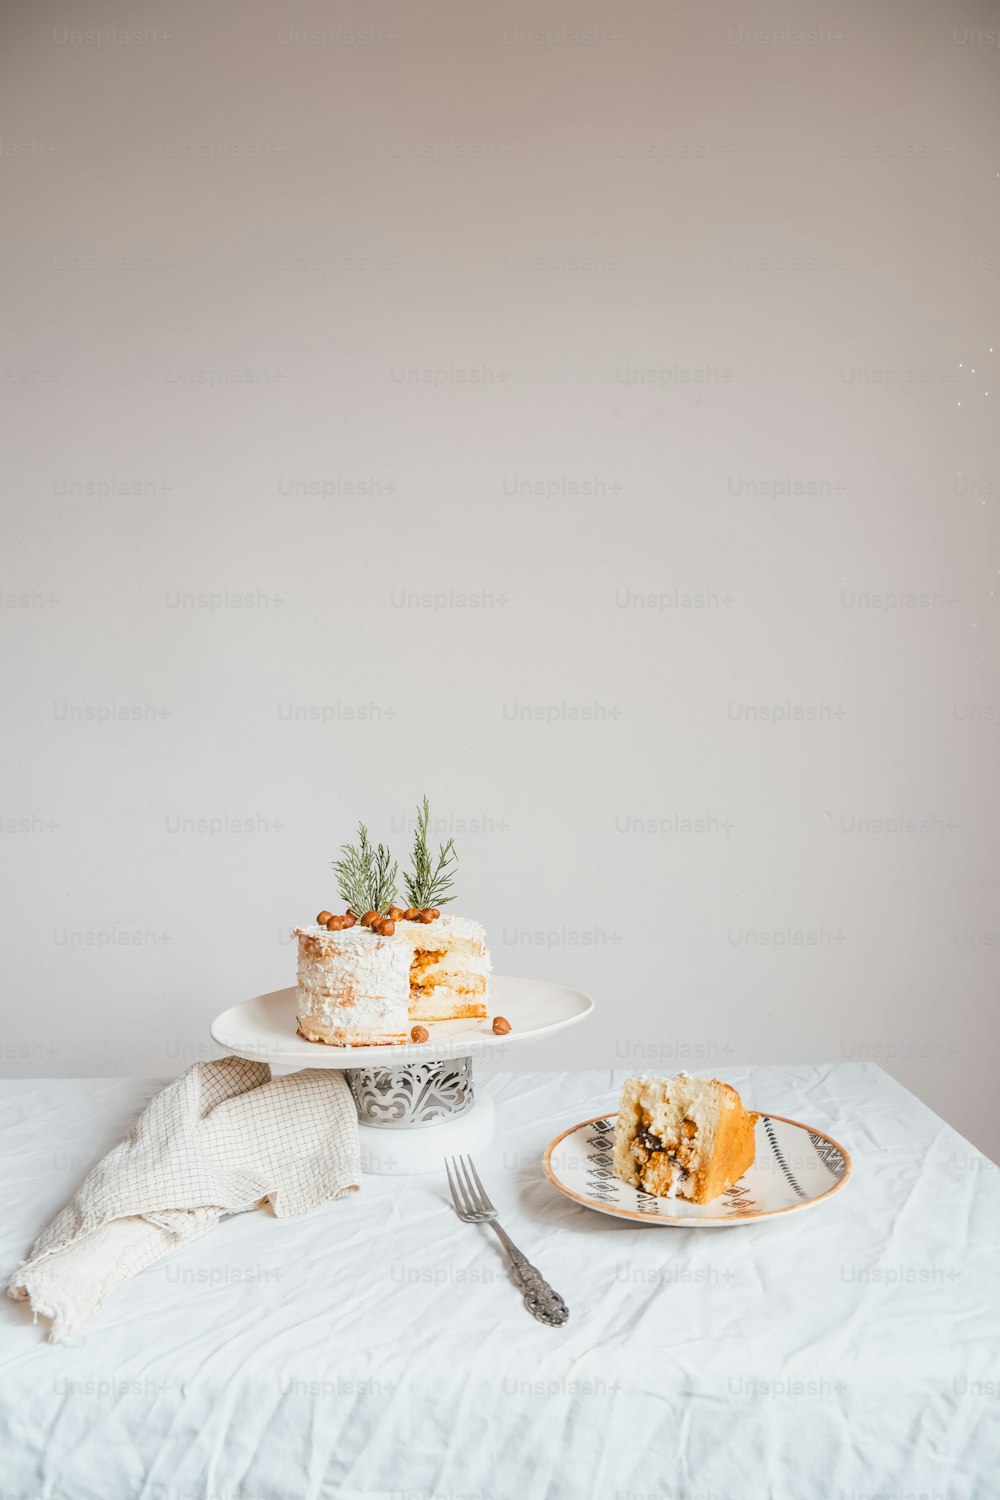 une table blanche surmontée d’un gâteau et d’une fourchette